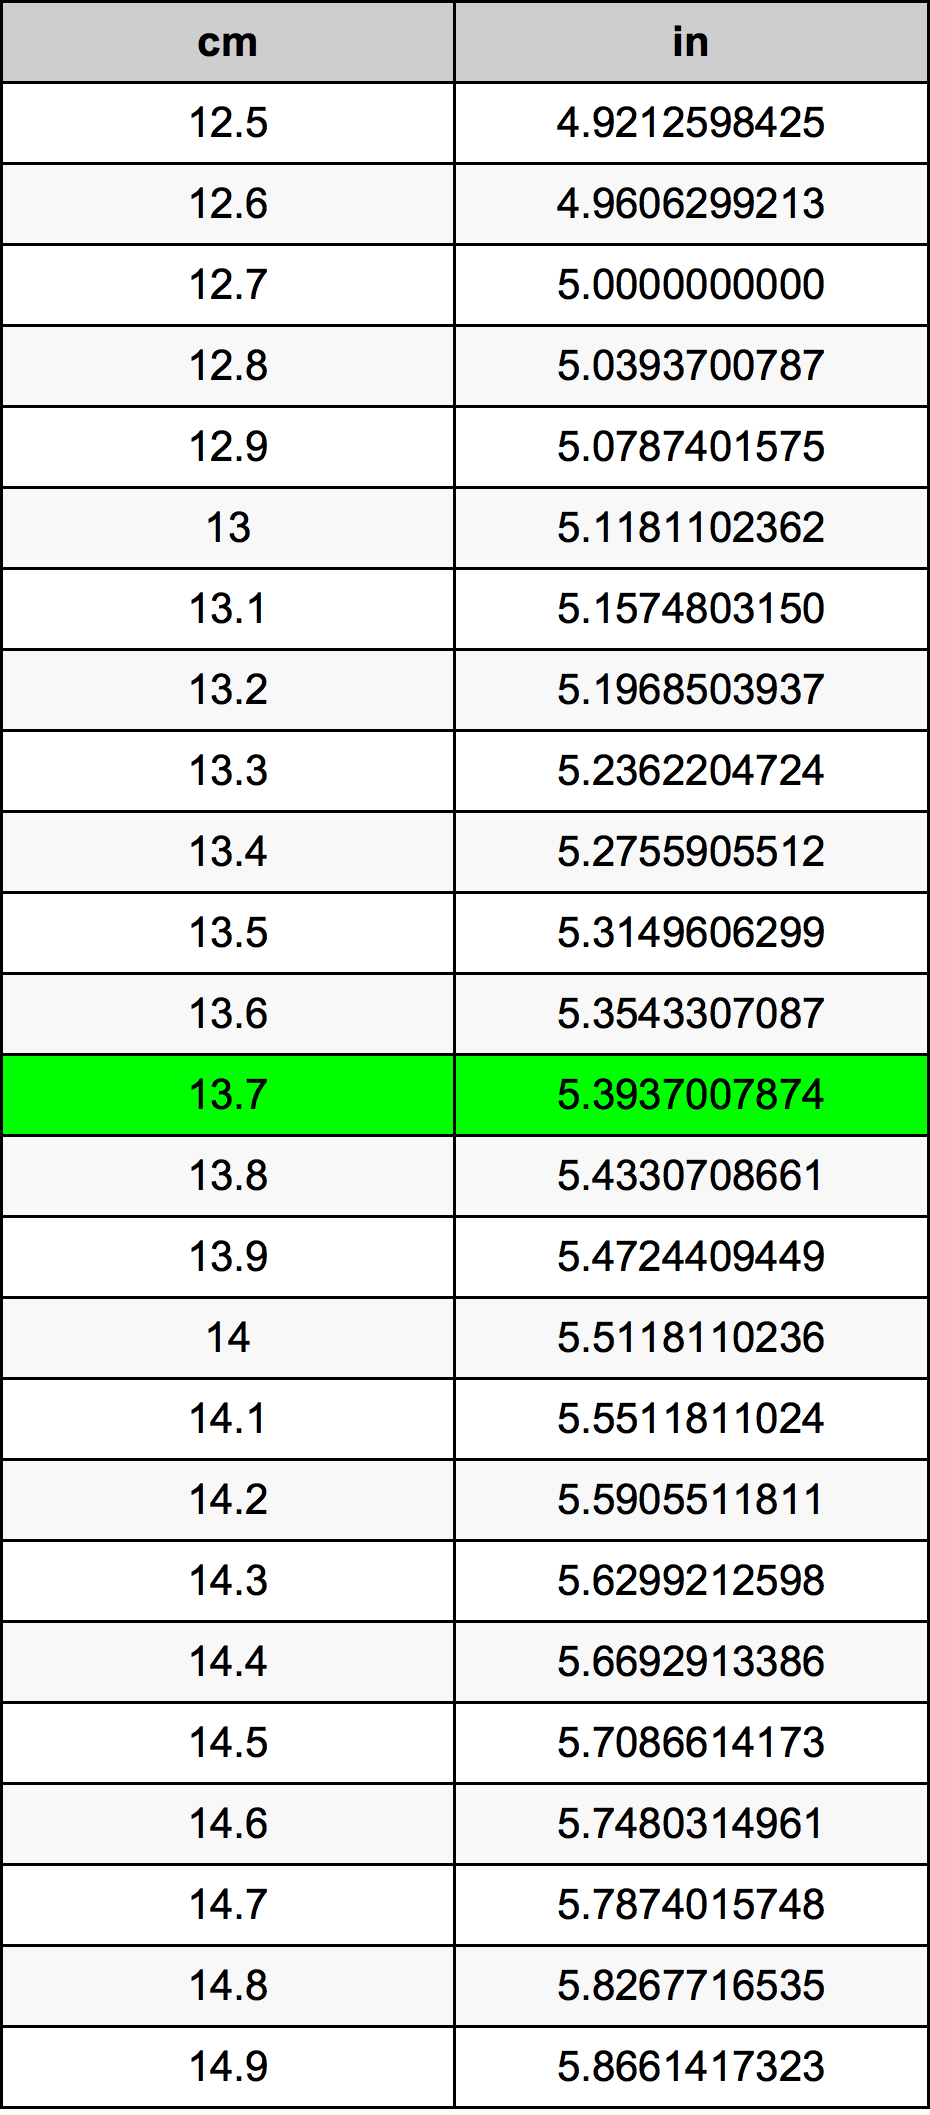 13.7 Centiméter átszámítási táblázat